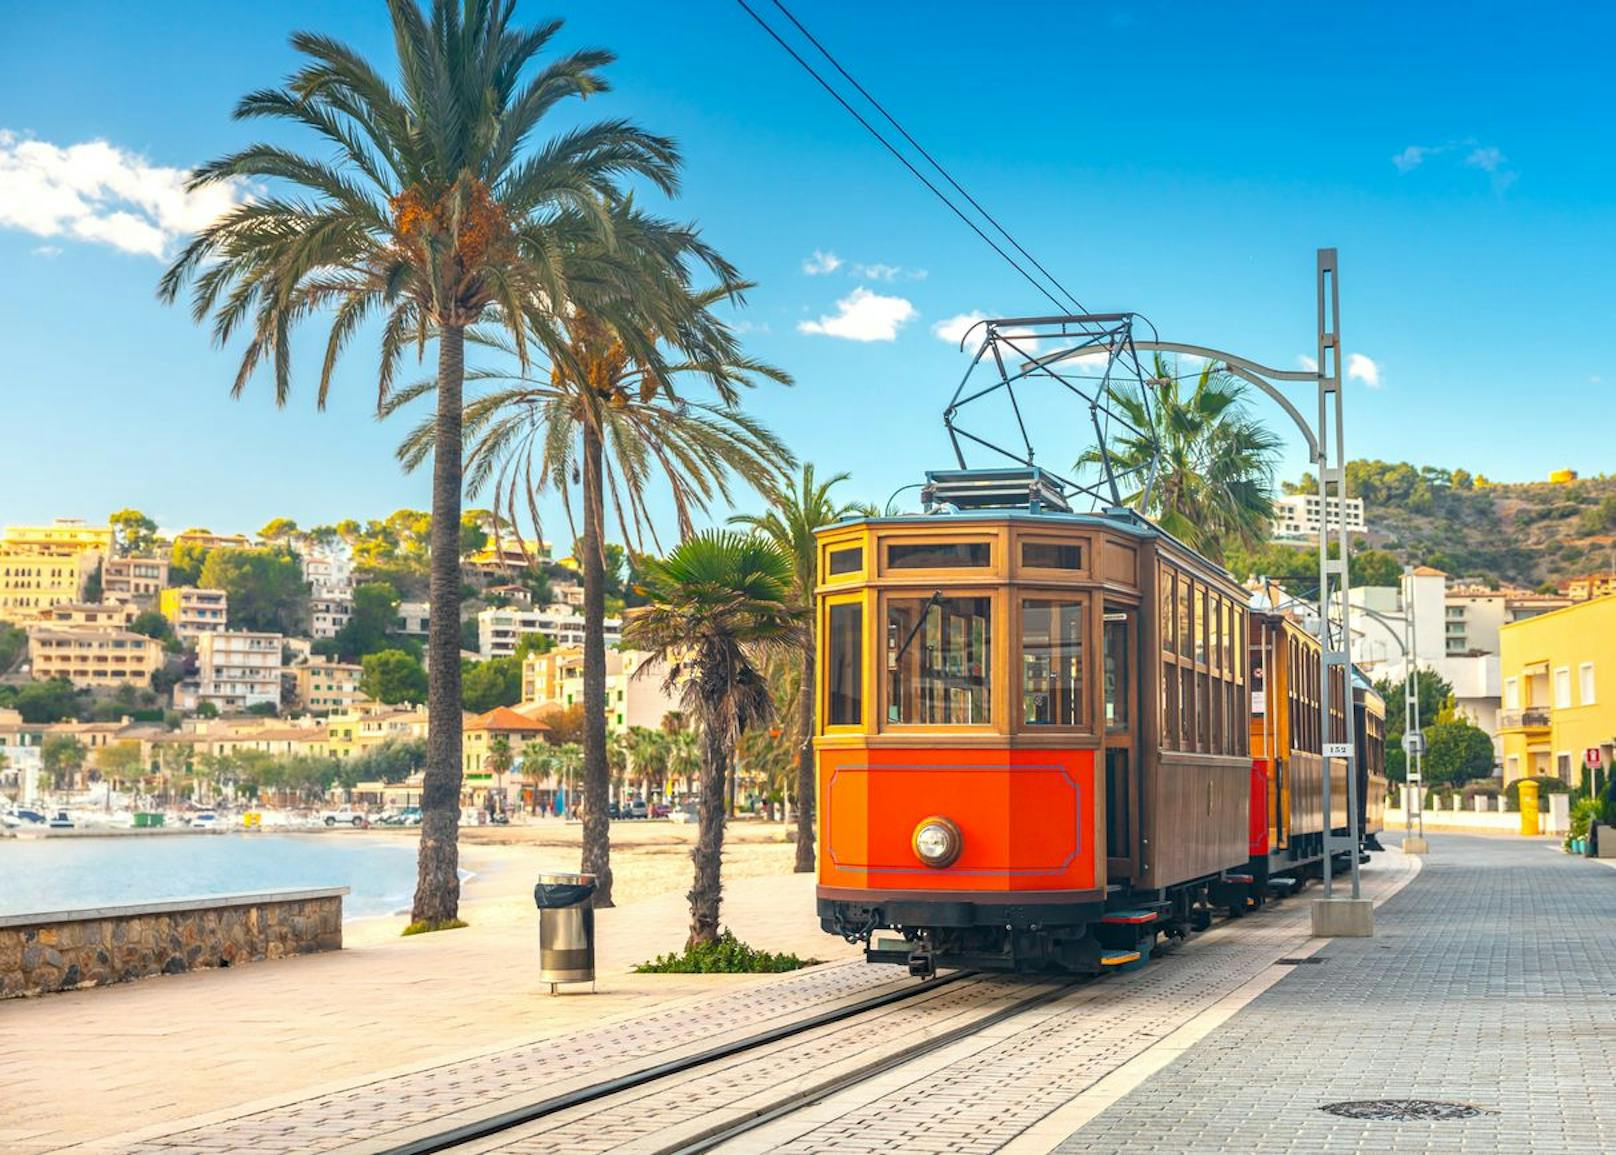 Die berühmte orangefarbene Straßenbahn auf Mallorca, Spanien.